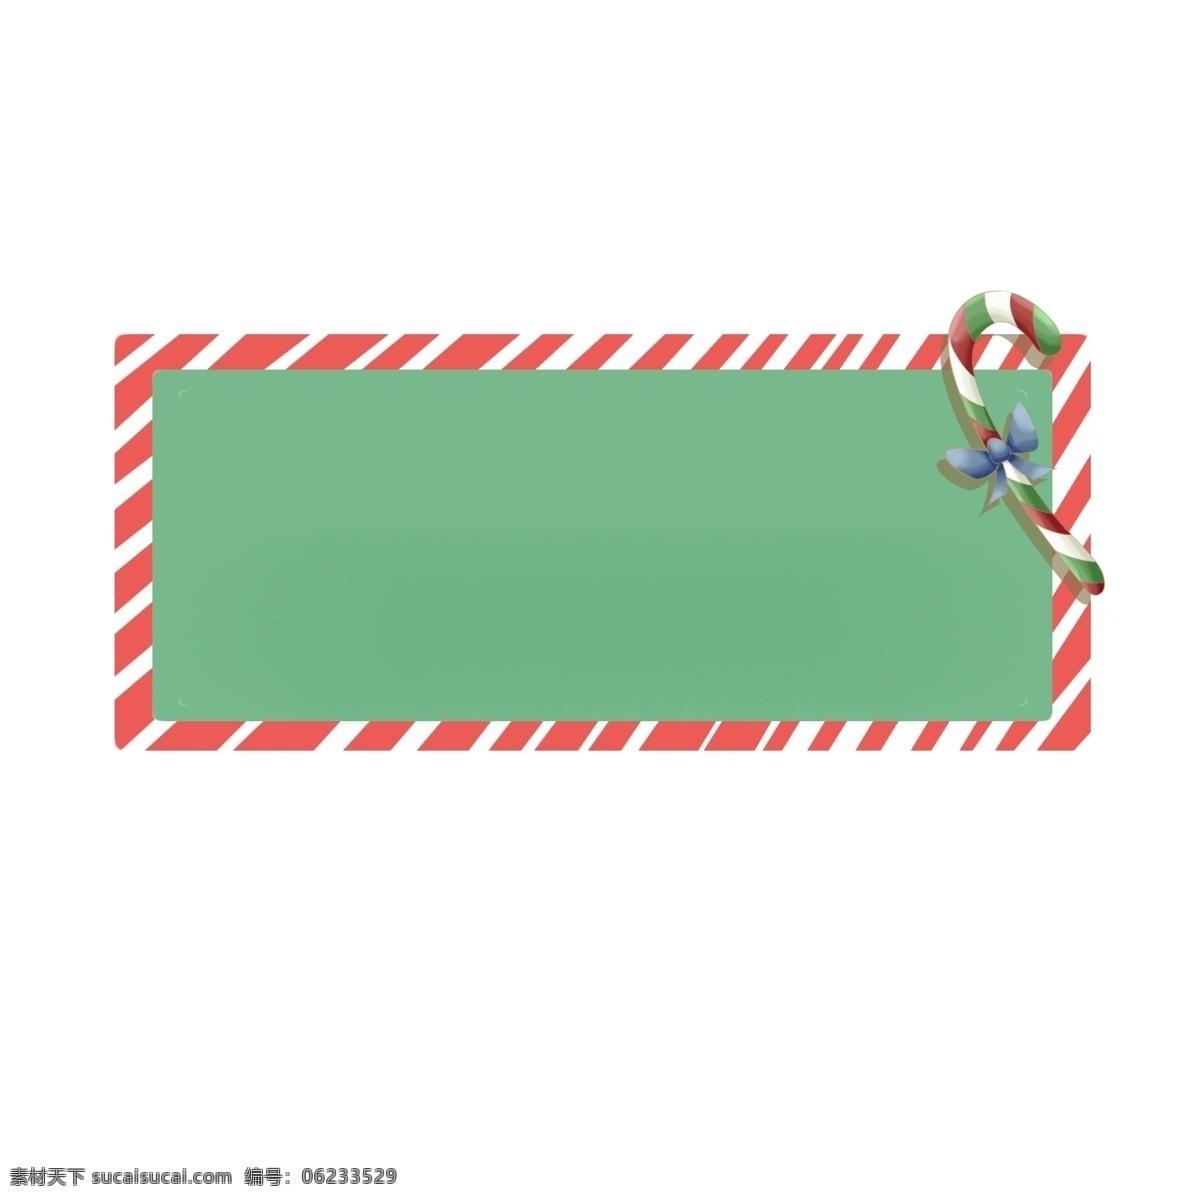 圣诞节 糖果 边框 插画 漂亮的边框 手绘边框 蝴蝶结装饰 边框插画 手绘 红色的边框 绿色的底纹